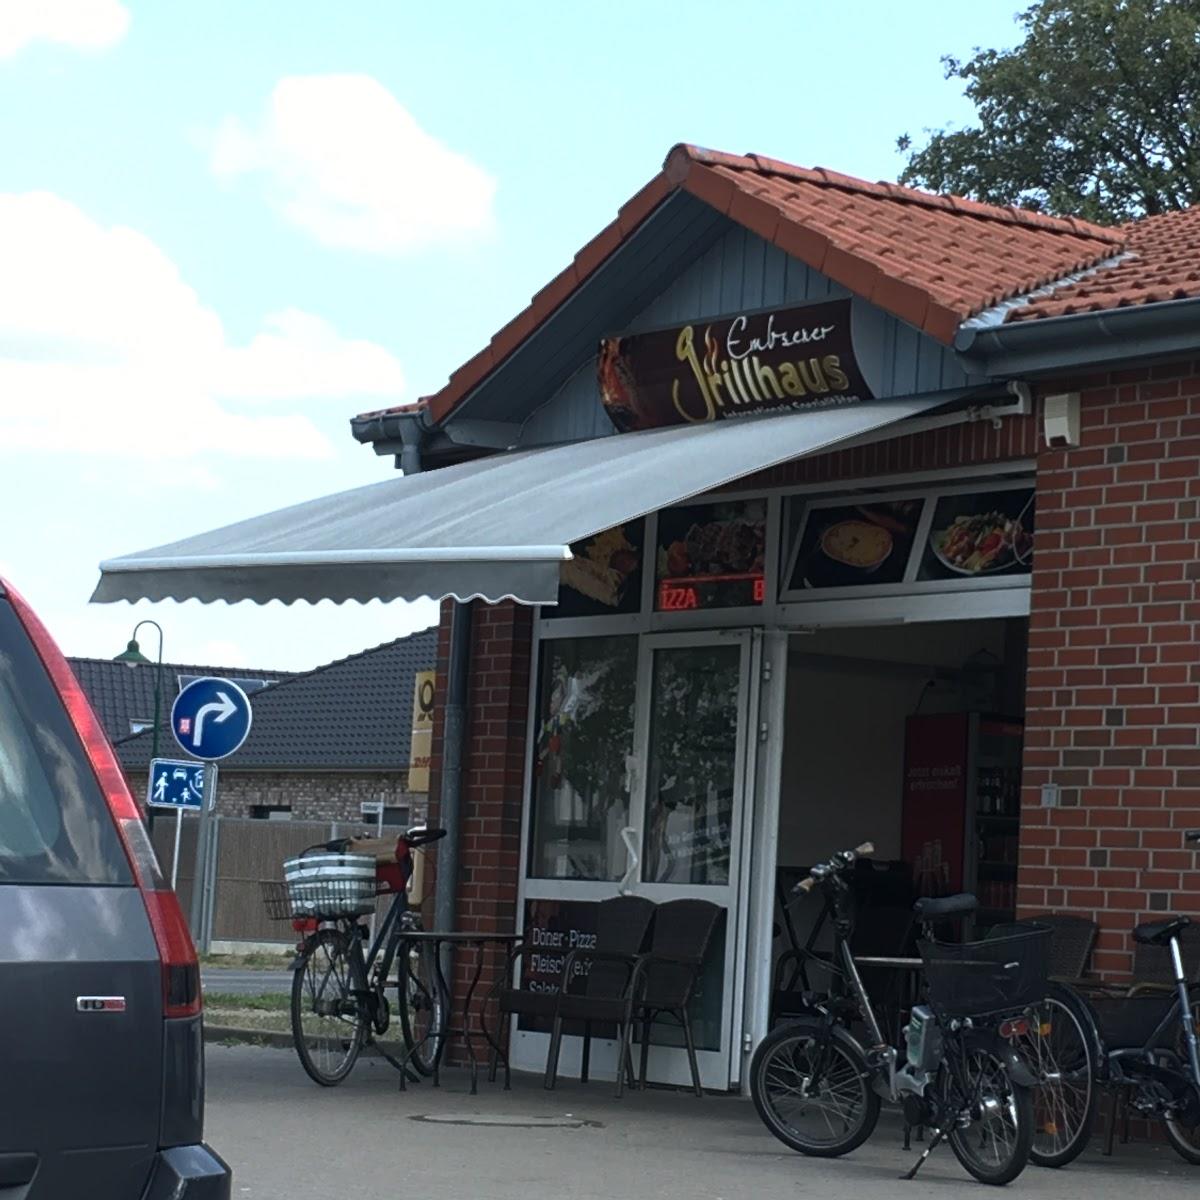 Restaurant "er Grillhaus" in Embsen